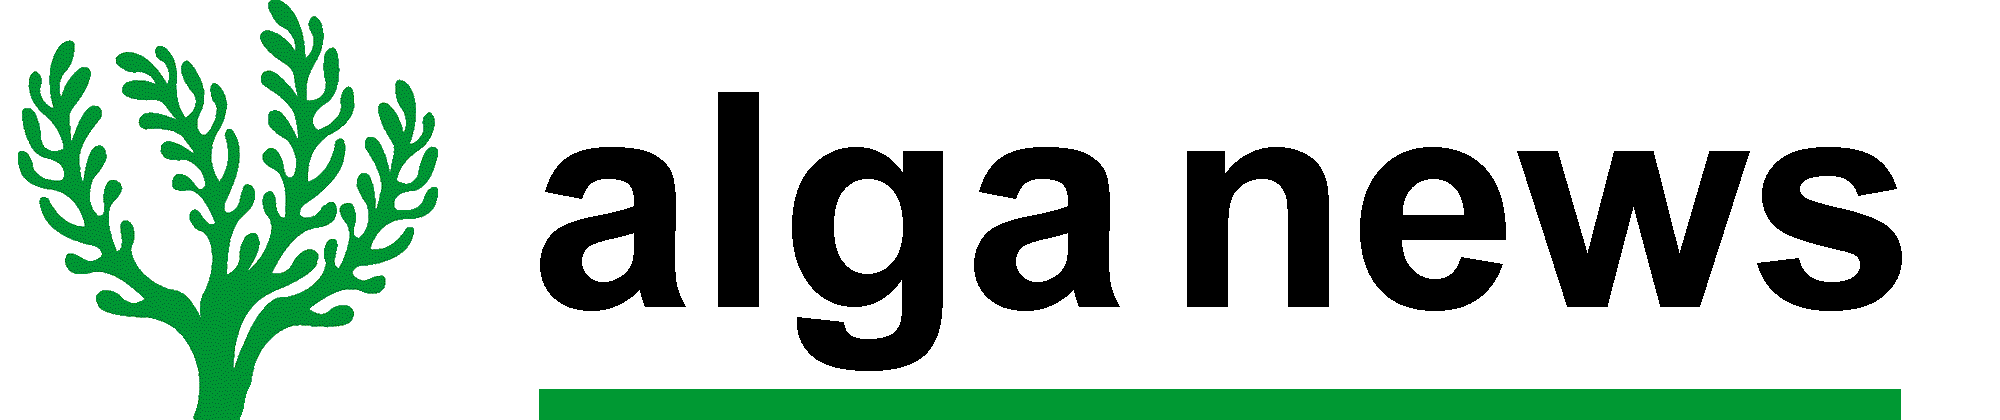 AlgaNews.com